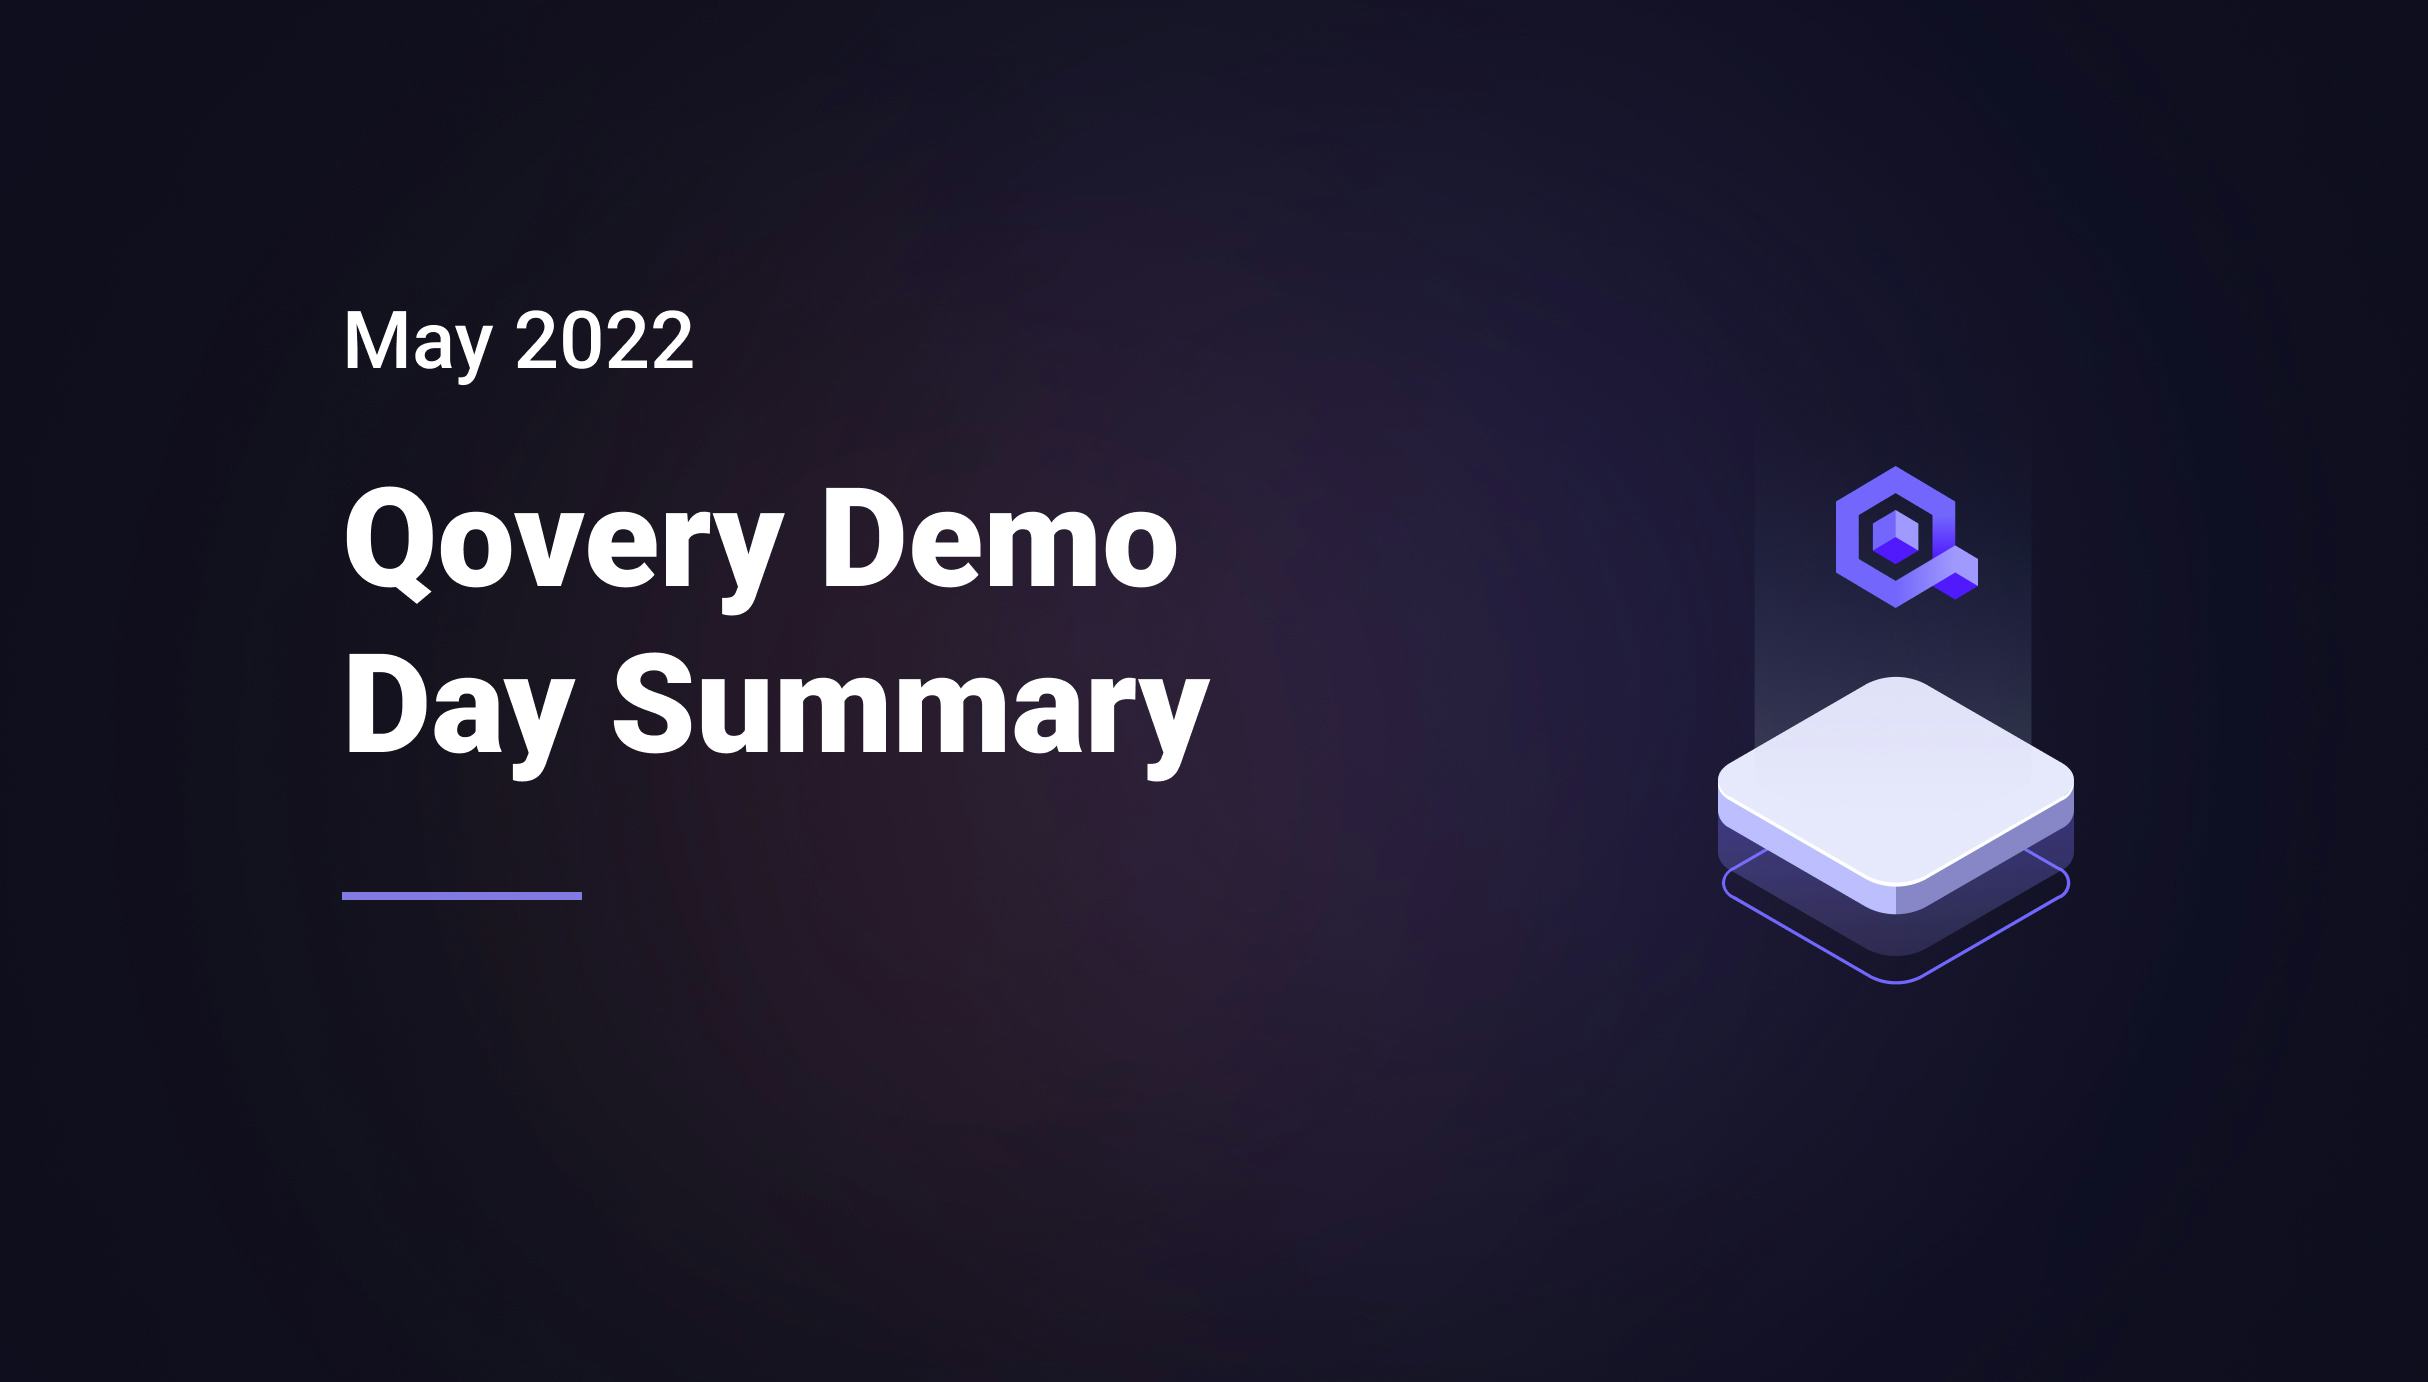 Qovery Demo Day Summary - May 2022 - Qovery